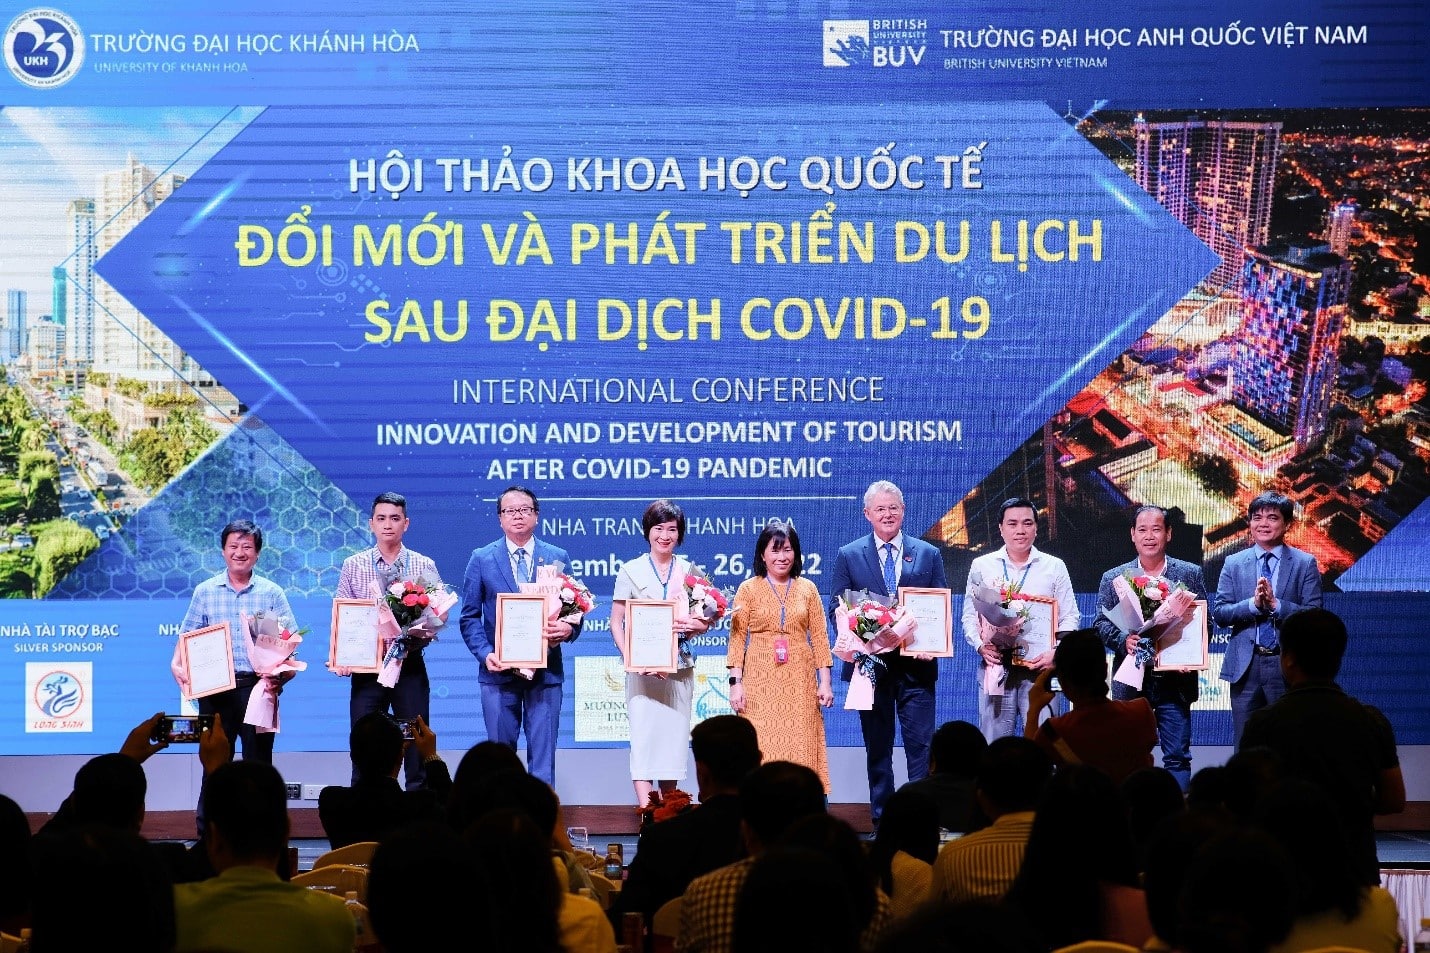 ĐH Anh Quốc Việt Nam hợp tác với ĐH Khánh Hòa tổ chức Hội thảo Khoa học Quốc tế – “Đổi mới và Phát triển Du lịch sau đại dịch Covid-19” 